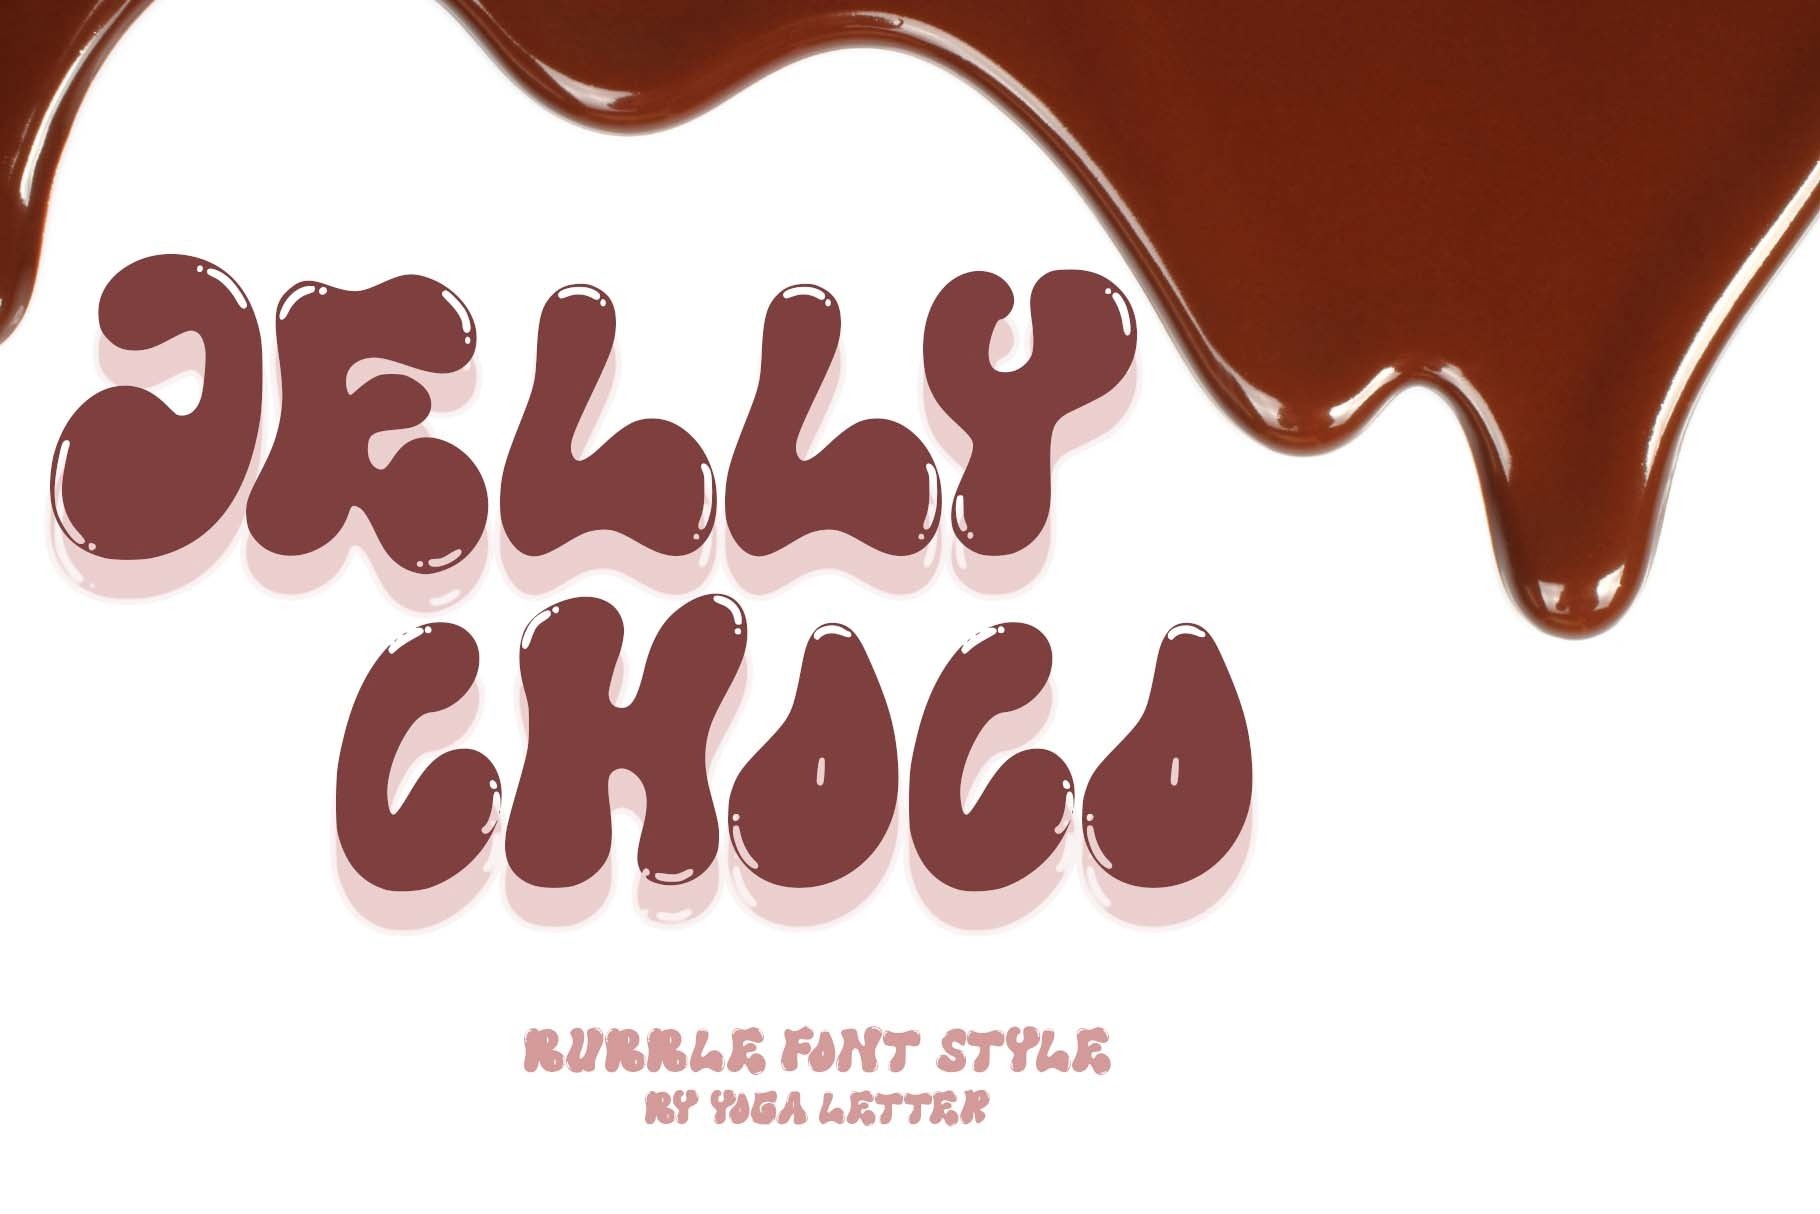 Beispiel einer Jelly Choco Regular-Schriftart